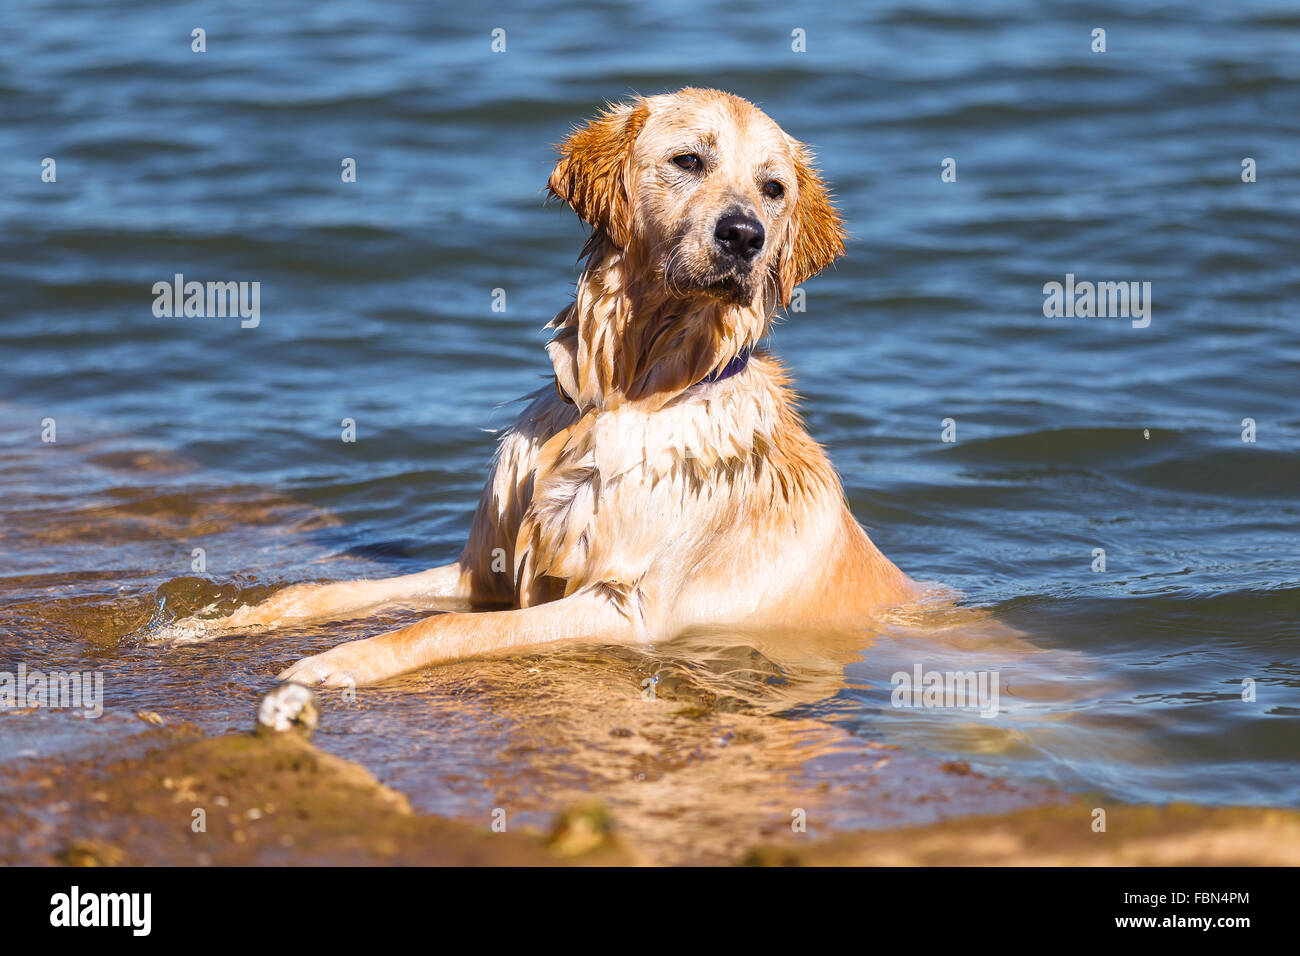 A golden retriever dog in the water. Punta Parayas, Maliaño, Camargo, Cantabria, Spain. Stock Photo